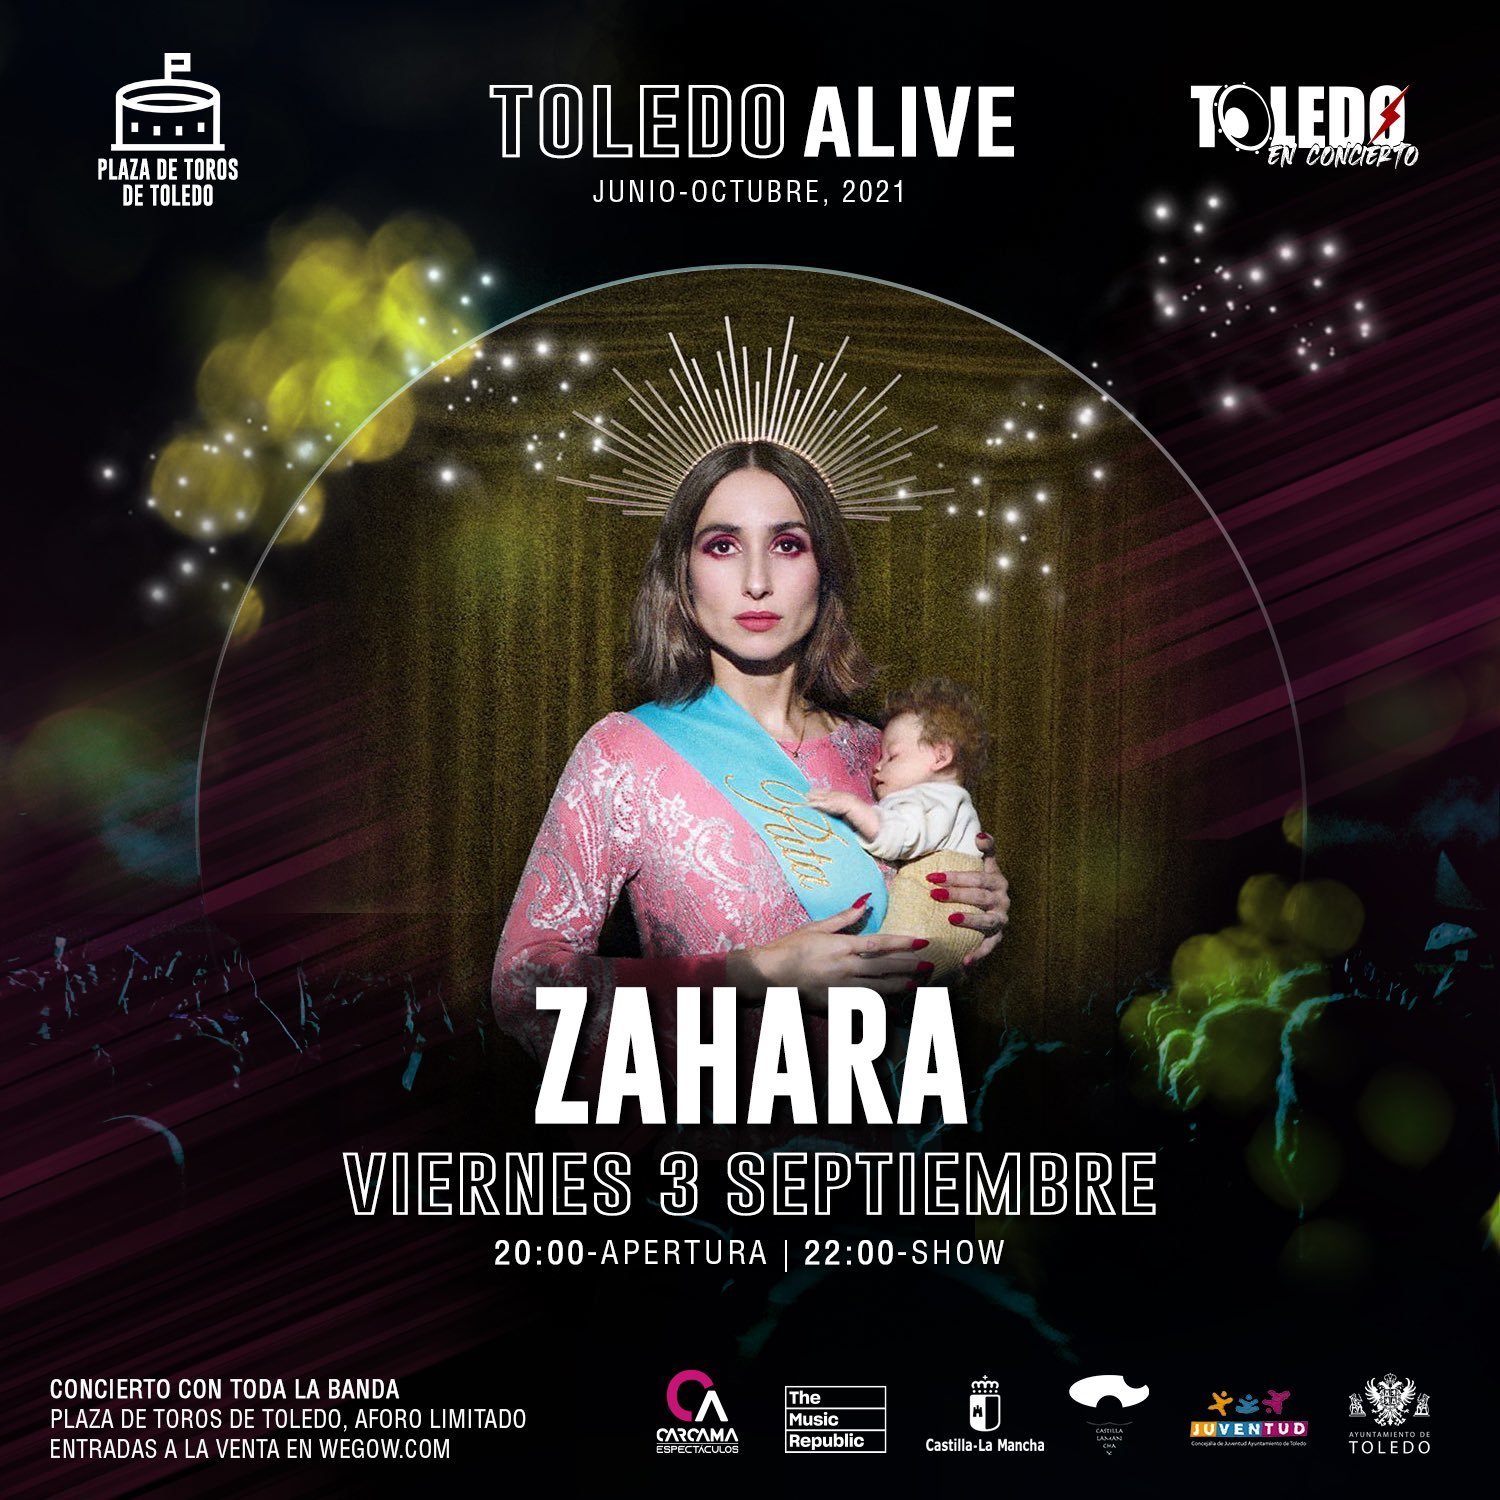 Cartel censurado del concierto de Zahara en Toledo.